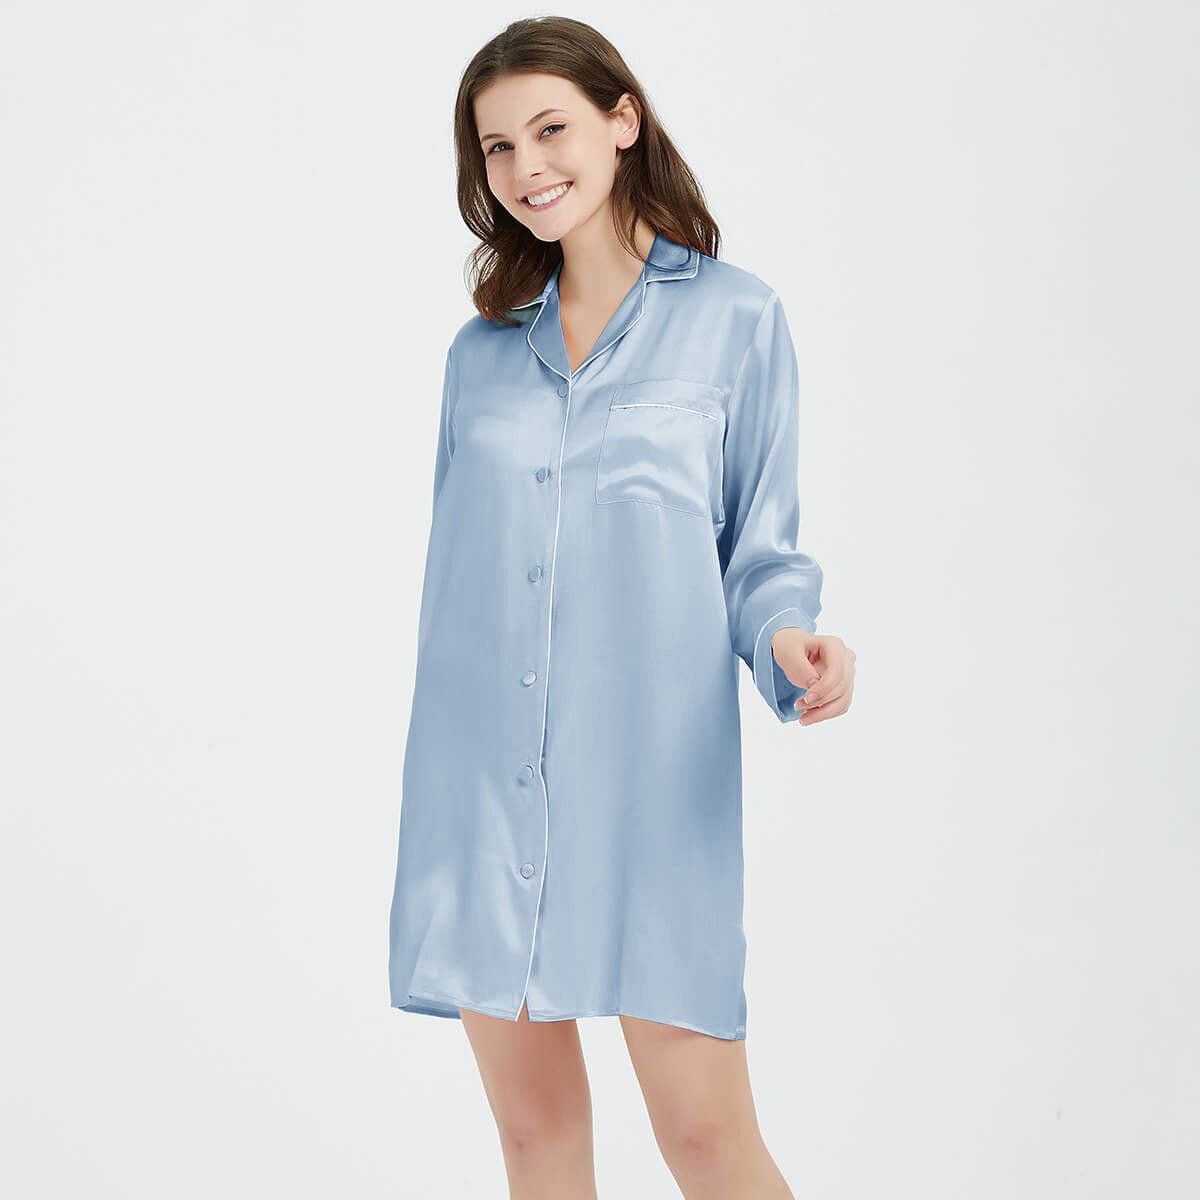 Silk Sleep Shirt Womens Long Sleeve Sleepwear